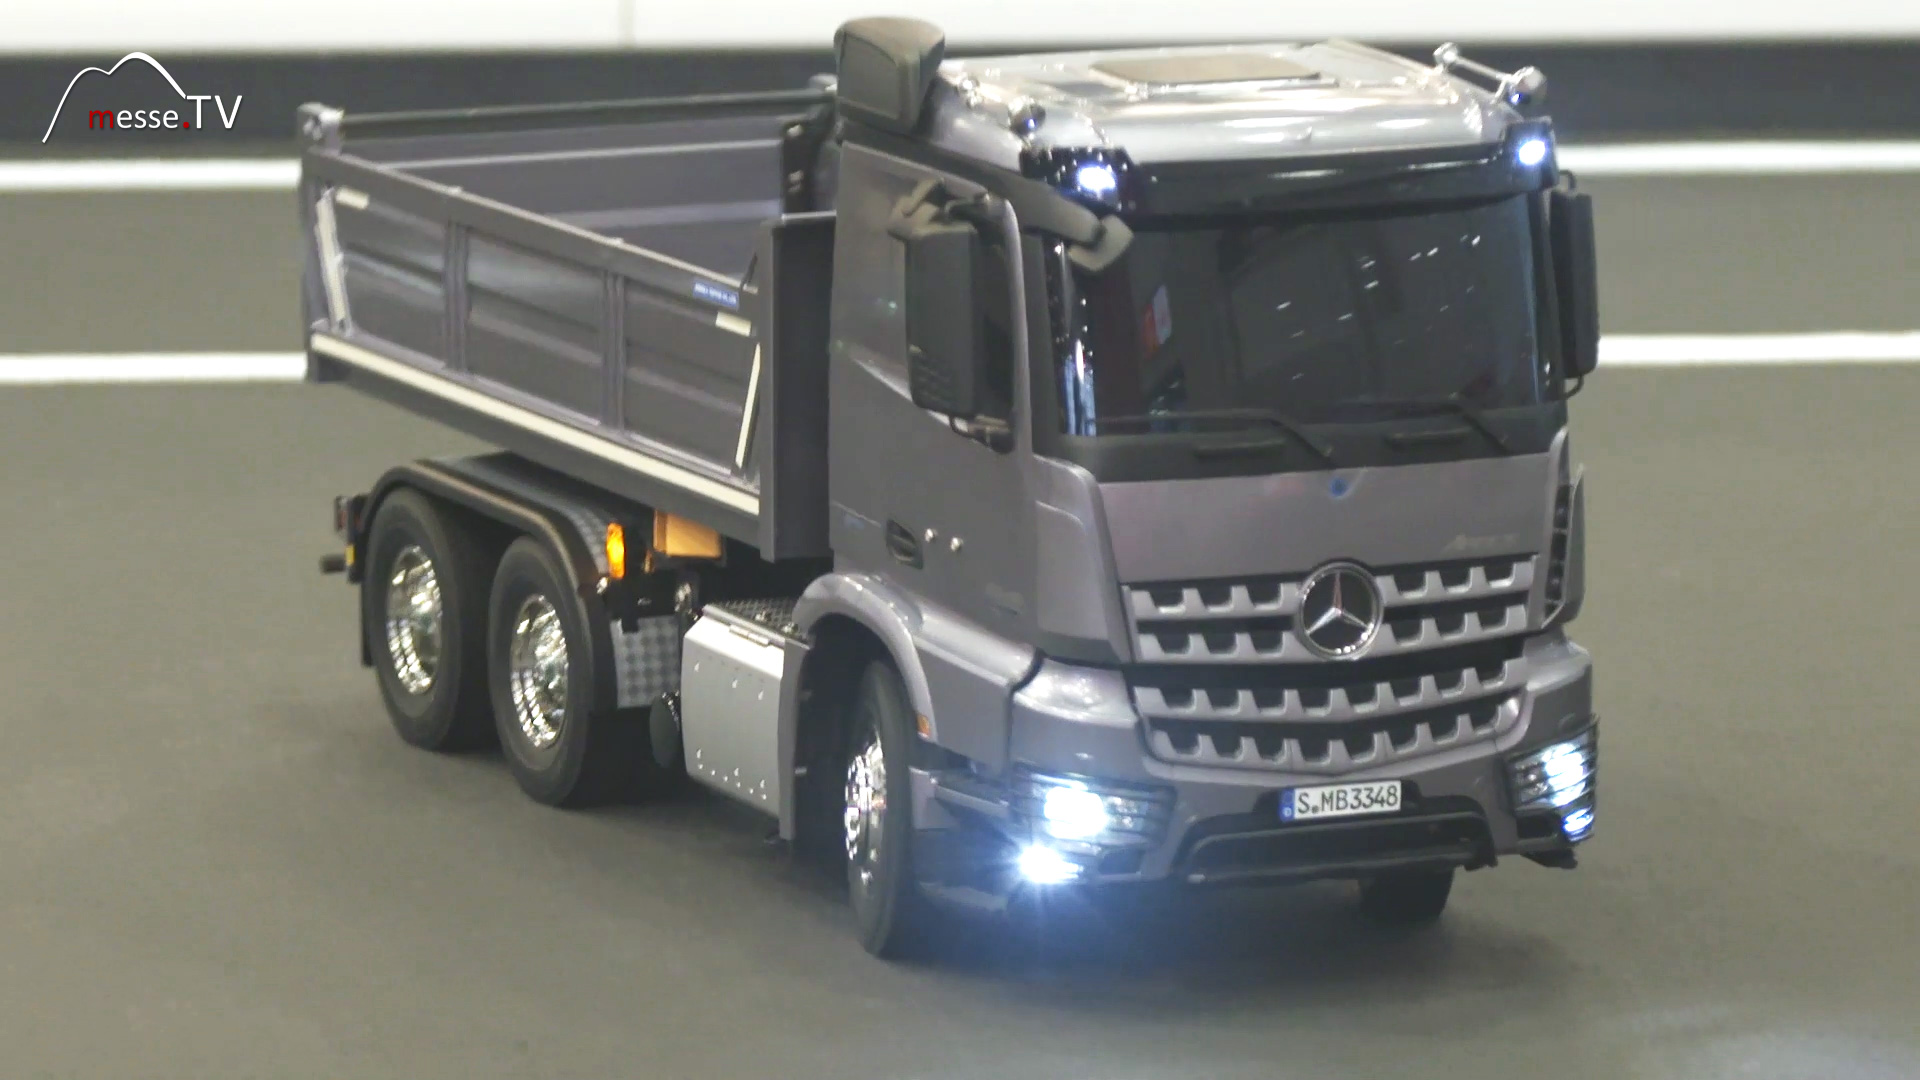 Mercedes Lastwagen Modellfahrzeug Tamiya